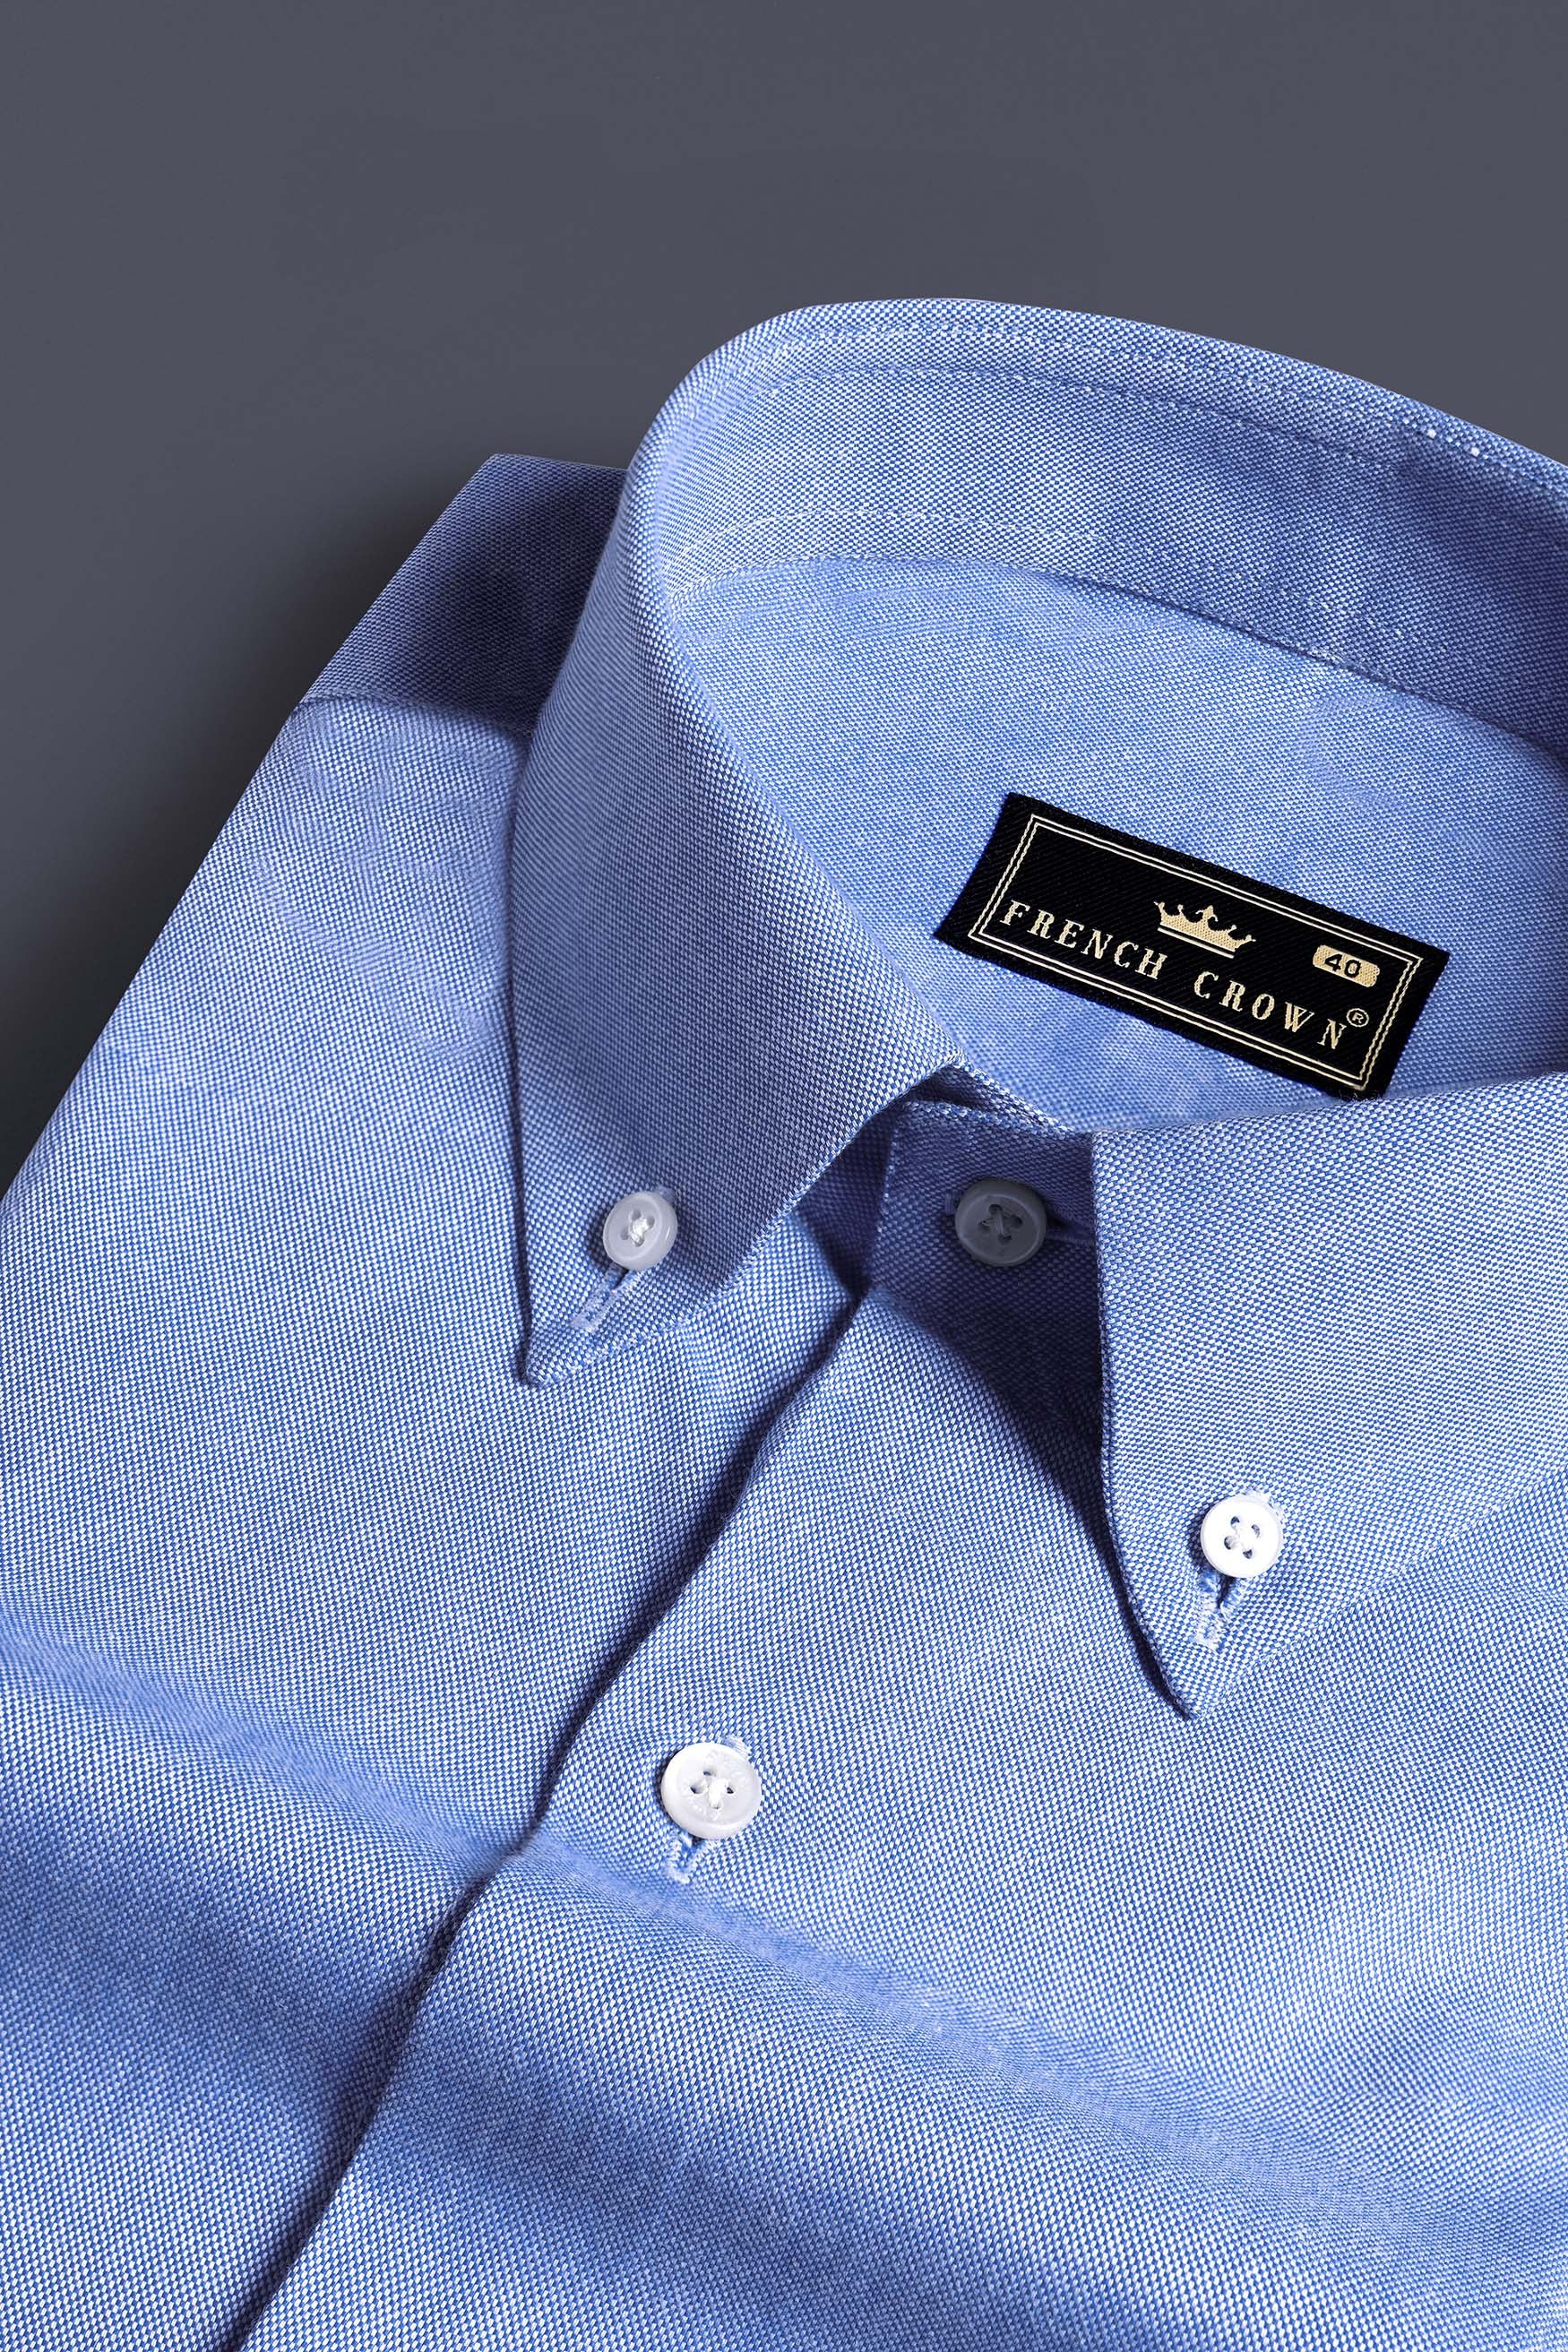 Glacier Blue Royal Oxford Button Down Shirt